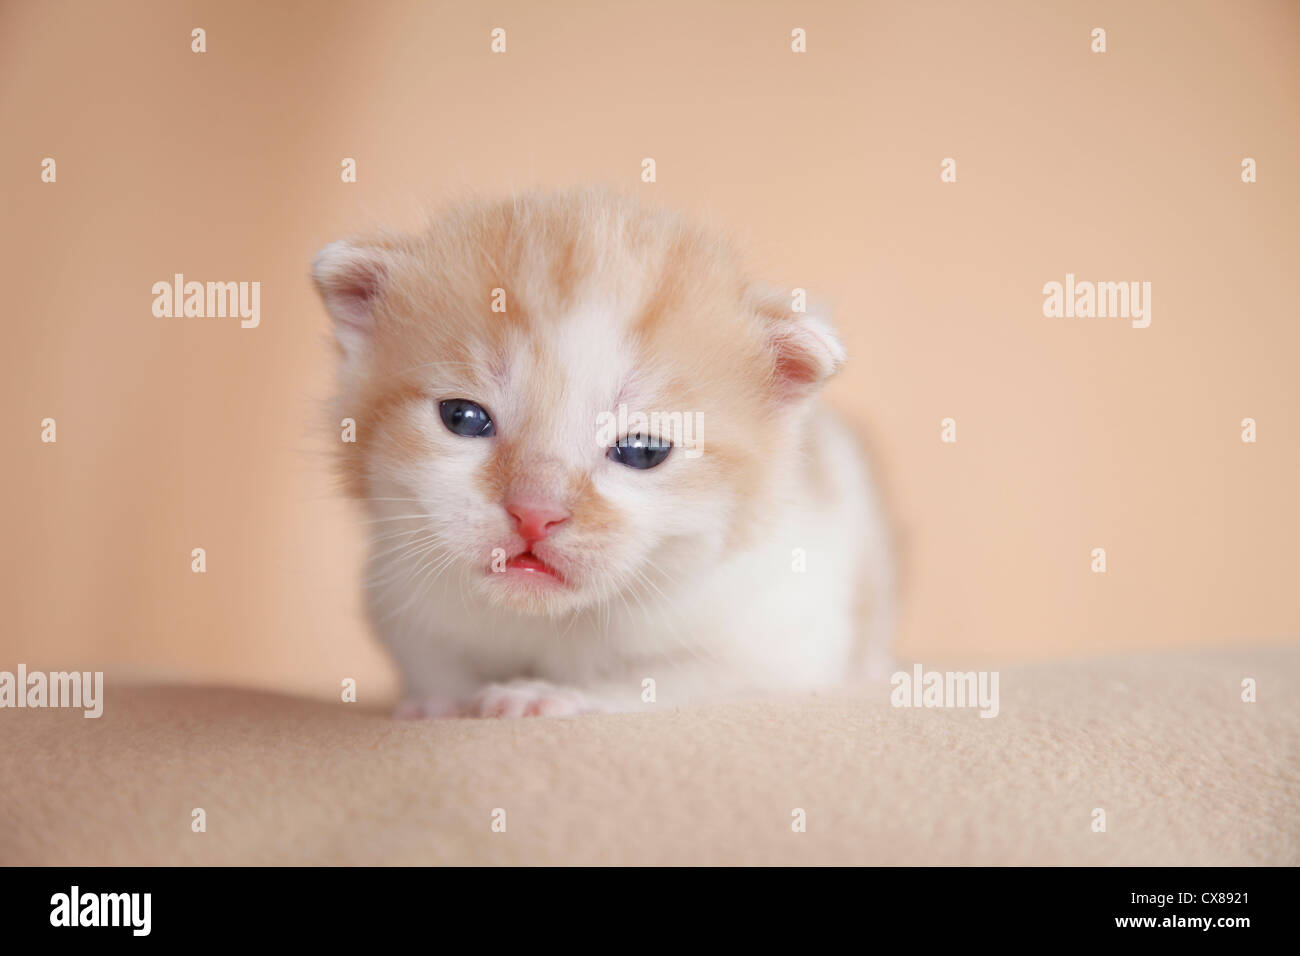 newborn kitten Stock Photo